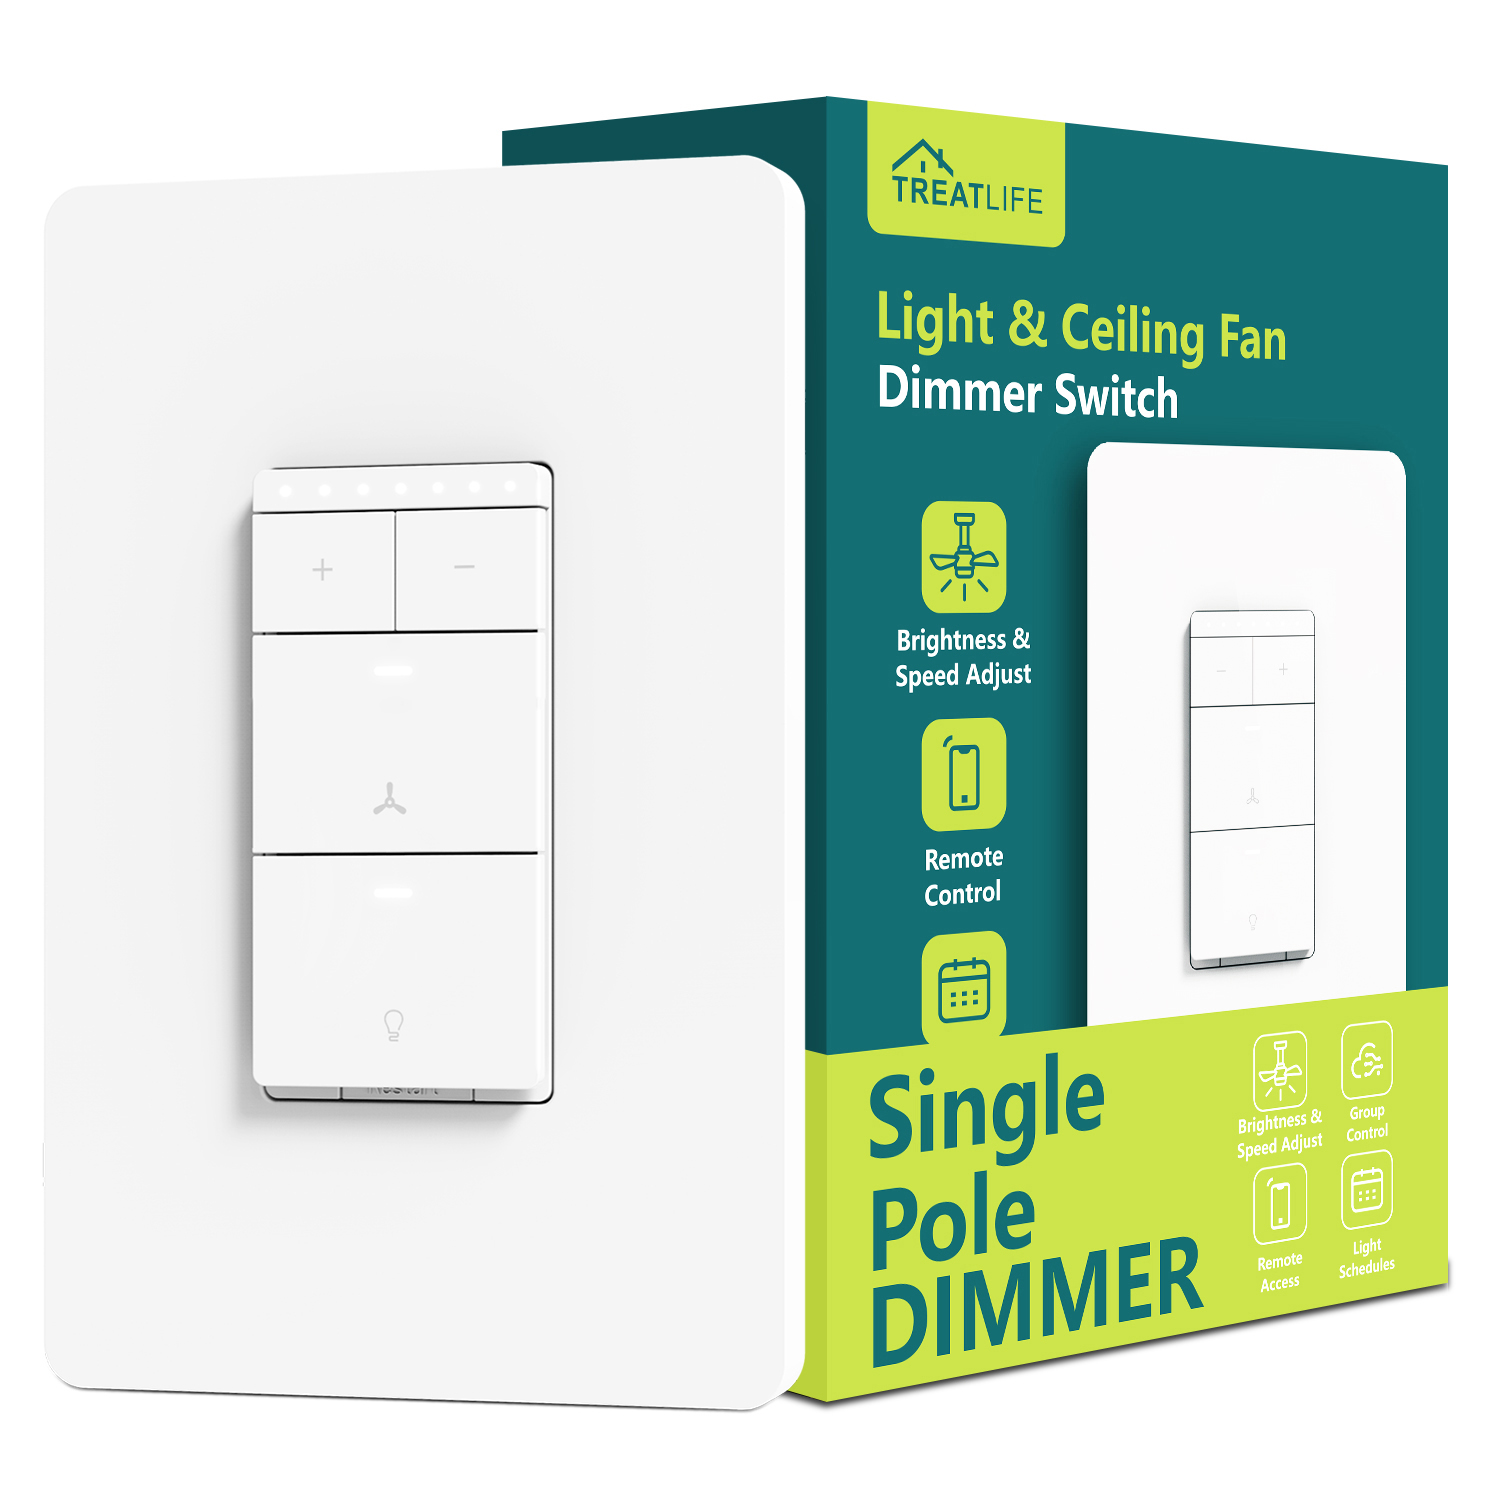 Treatlife Smart Ceiling Fan & Light Dimmer Switch - Box